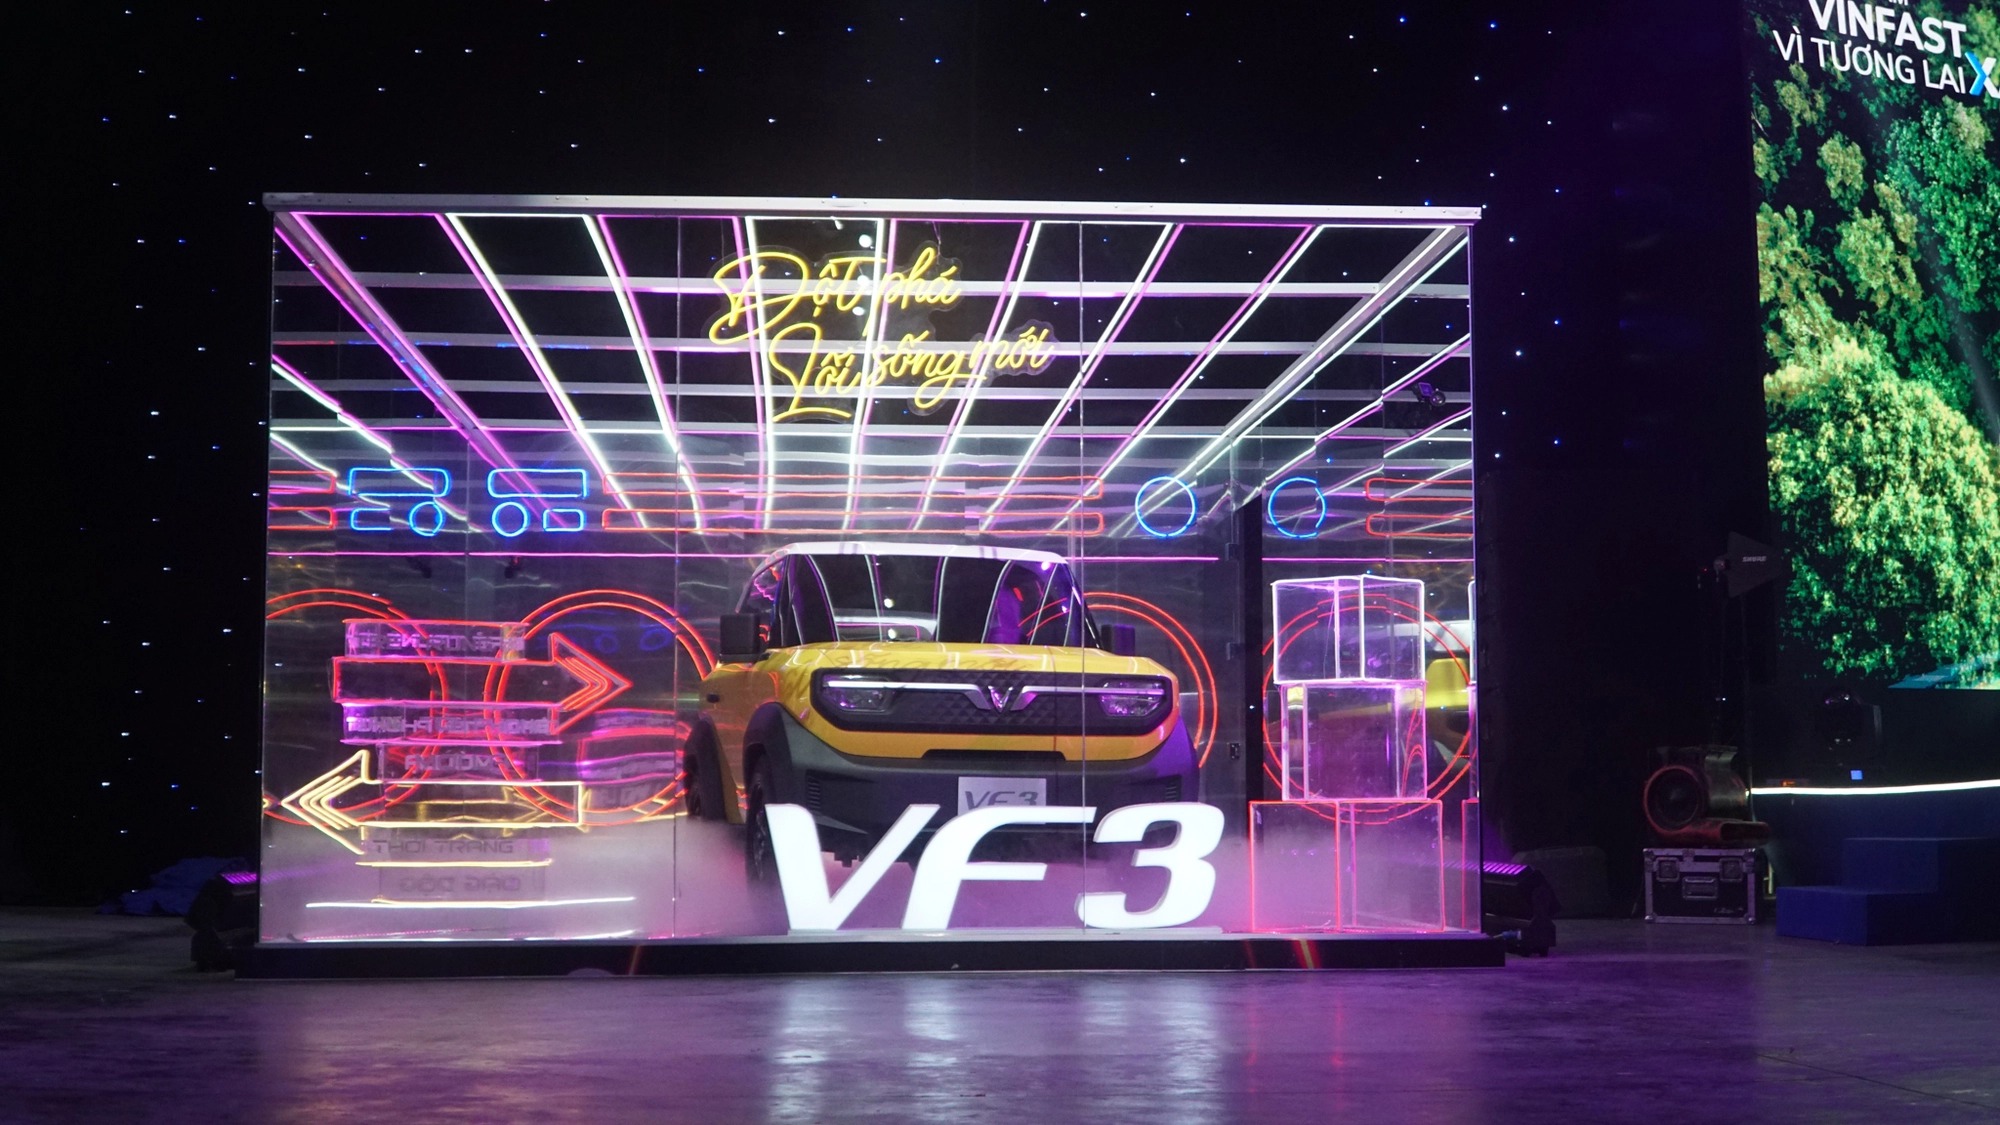 VinFast tham dự triển lãm công nghệ lớn nhất thế giới vào dịp đầu năm, hé lộ bán tải cùng ra mắt VF 3 tới người dùng quốc tế - Ảnh 3.